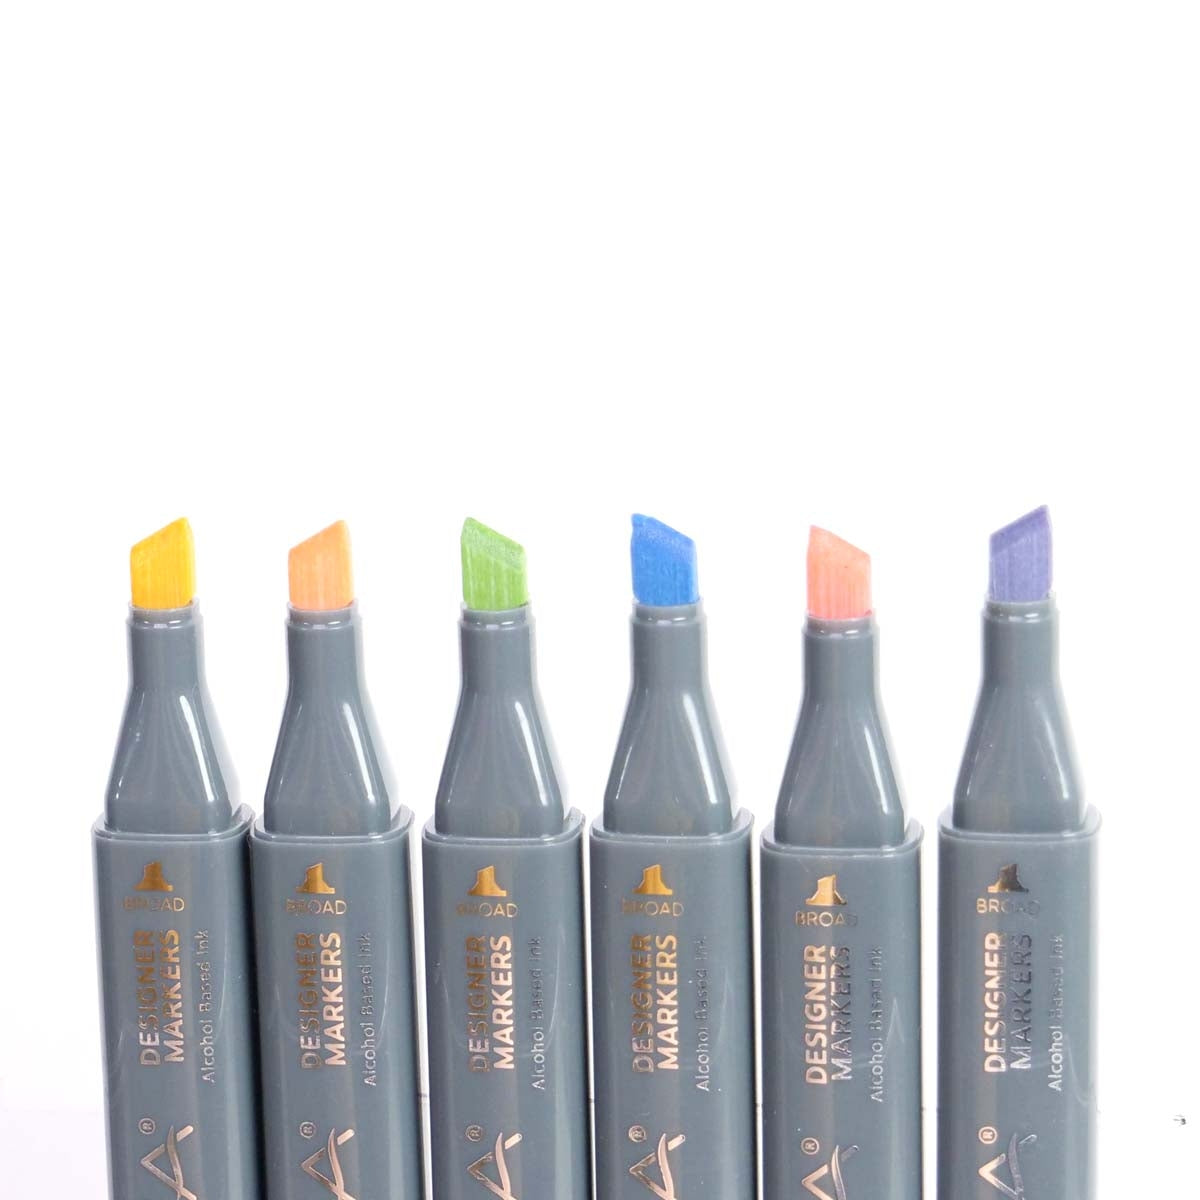 Nova - Designer Markers - Dual Tip - Alcohol Based - 6 Pack - Pastels